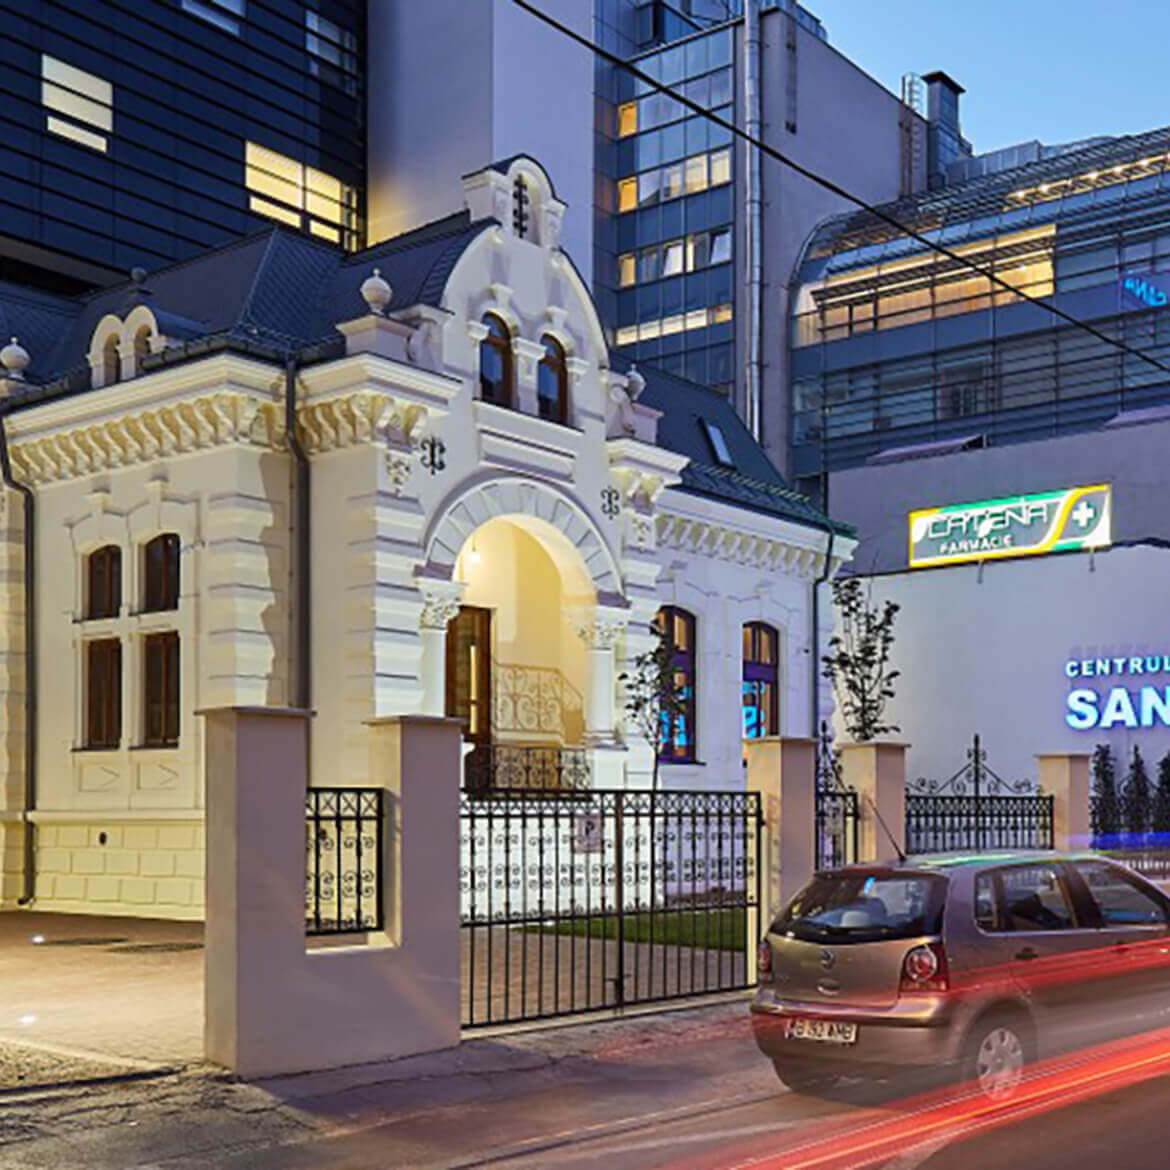 Spitalul Clinic Sanador, Strada Sevastopol 9, București, România